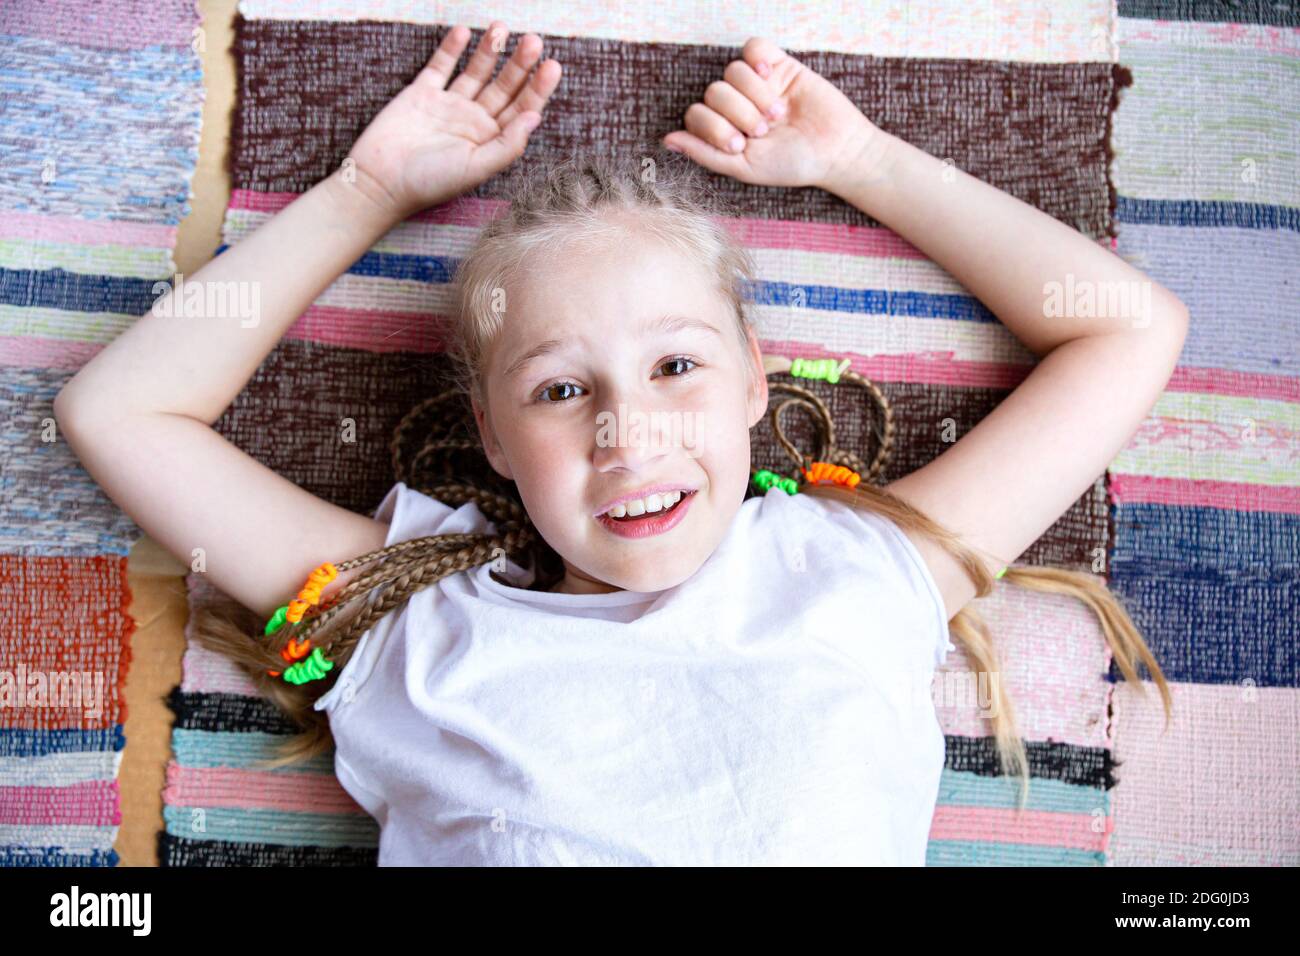 Ritratto di una bella ragazza sorridente con i pigtail guardando la macchina fotografica e sorridendo, sdraiata su un tappeto intrecciato con le braccia in su. Foto Stock